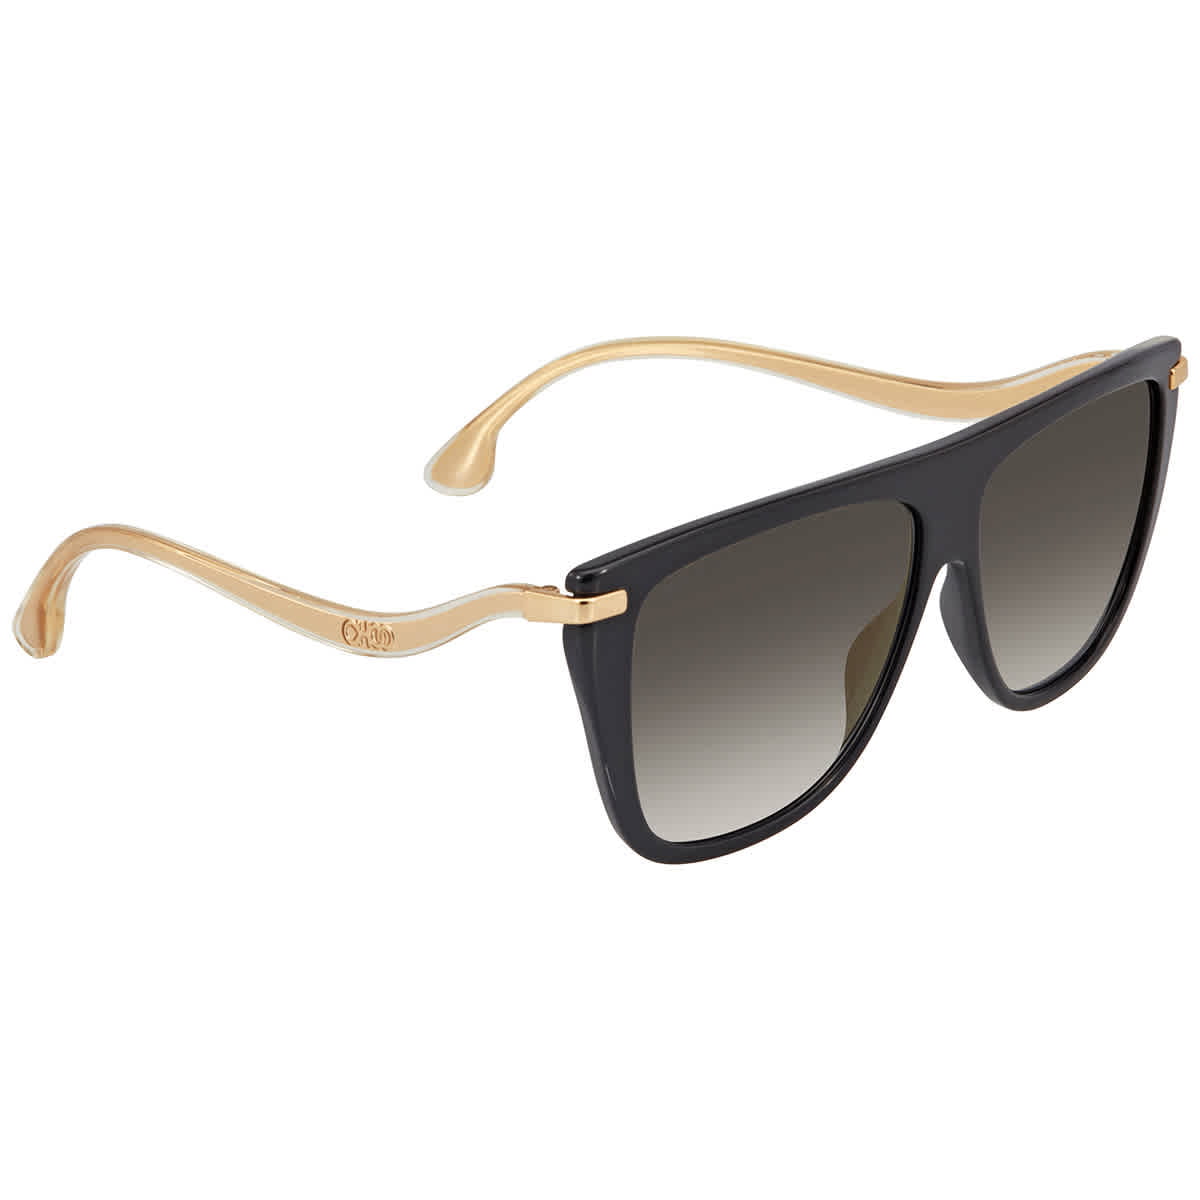 Tommy Hilfiger Th 1765/s Square Sunglasses in Nero Nude Womens Sunglasses Tommy Hilfiger Sunglasses Black 